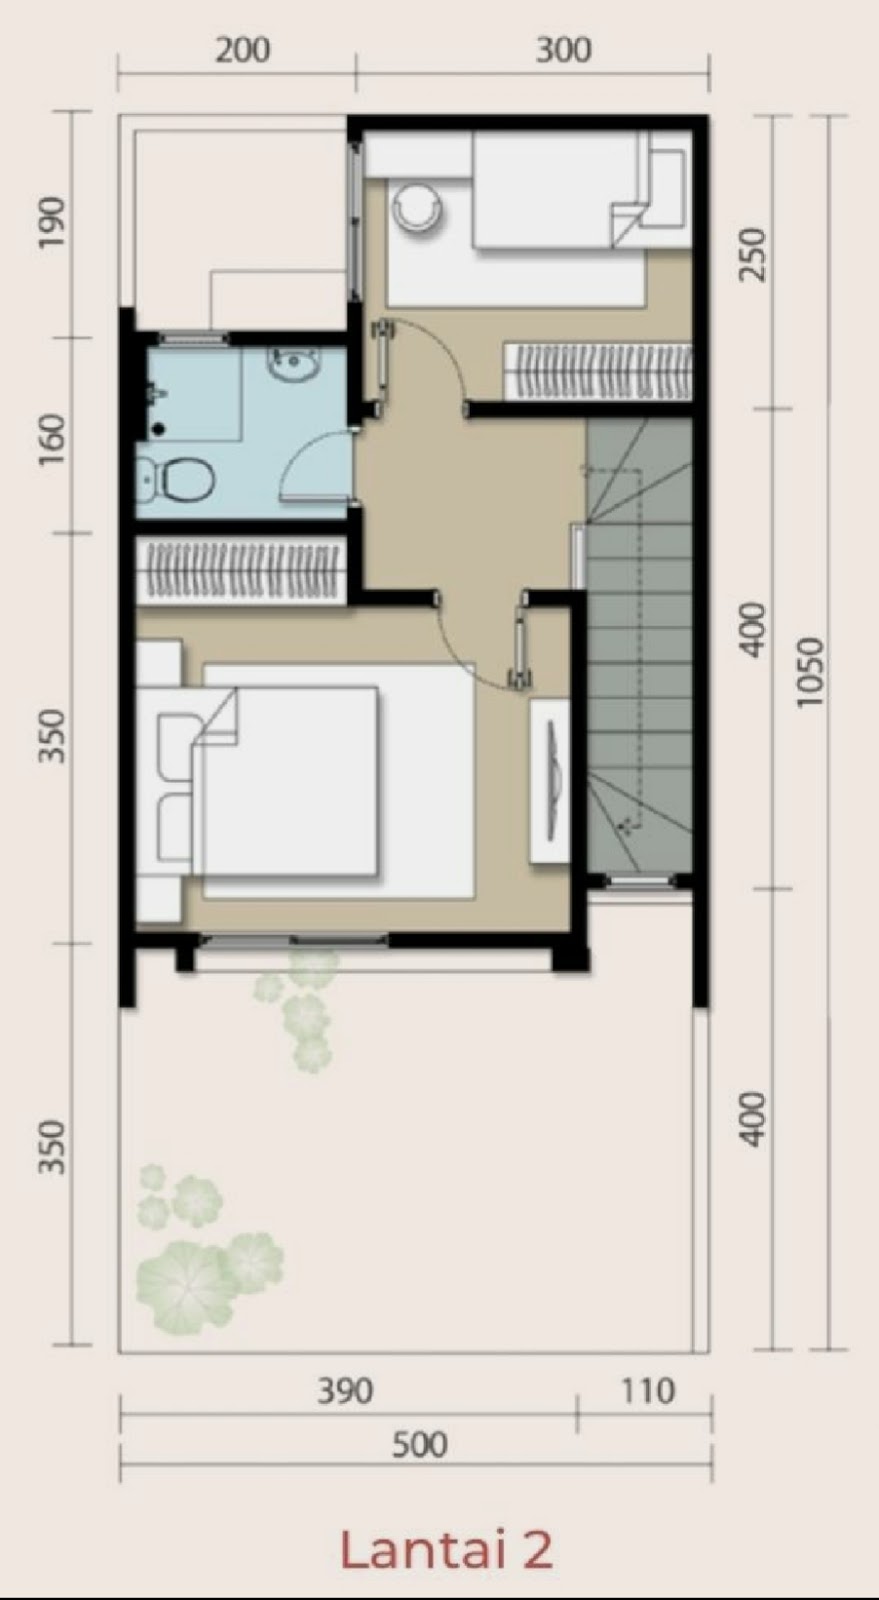 10 Desain Rumah Minimalis 2 Lantai 2021 Terfavorit Fatih Inspira